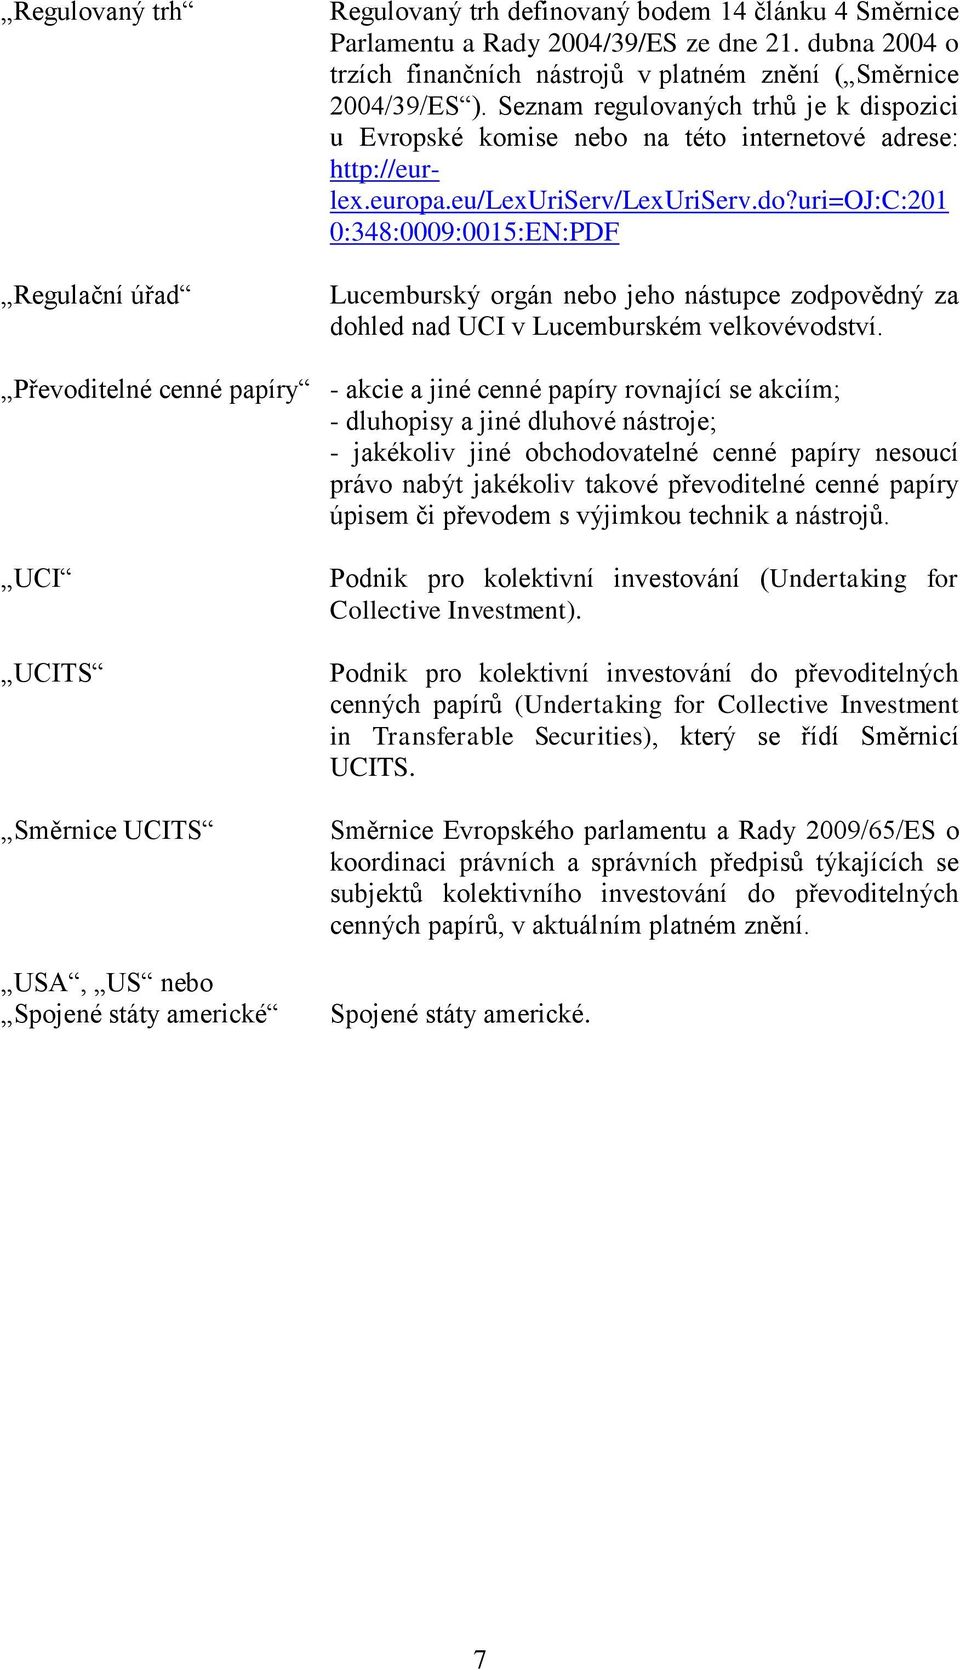 eu/lexuriserv/lexuriserv.do?uri=oj:c:201 0:348:0009:0015:EN:PDF Lucemburský orgán nebo jeho nástupce zodpovědný za dohled nad UCI v Lucemburském velkovévodství.